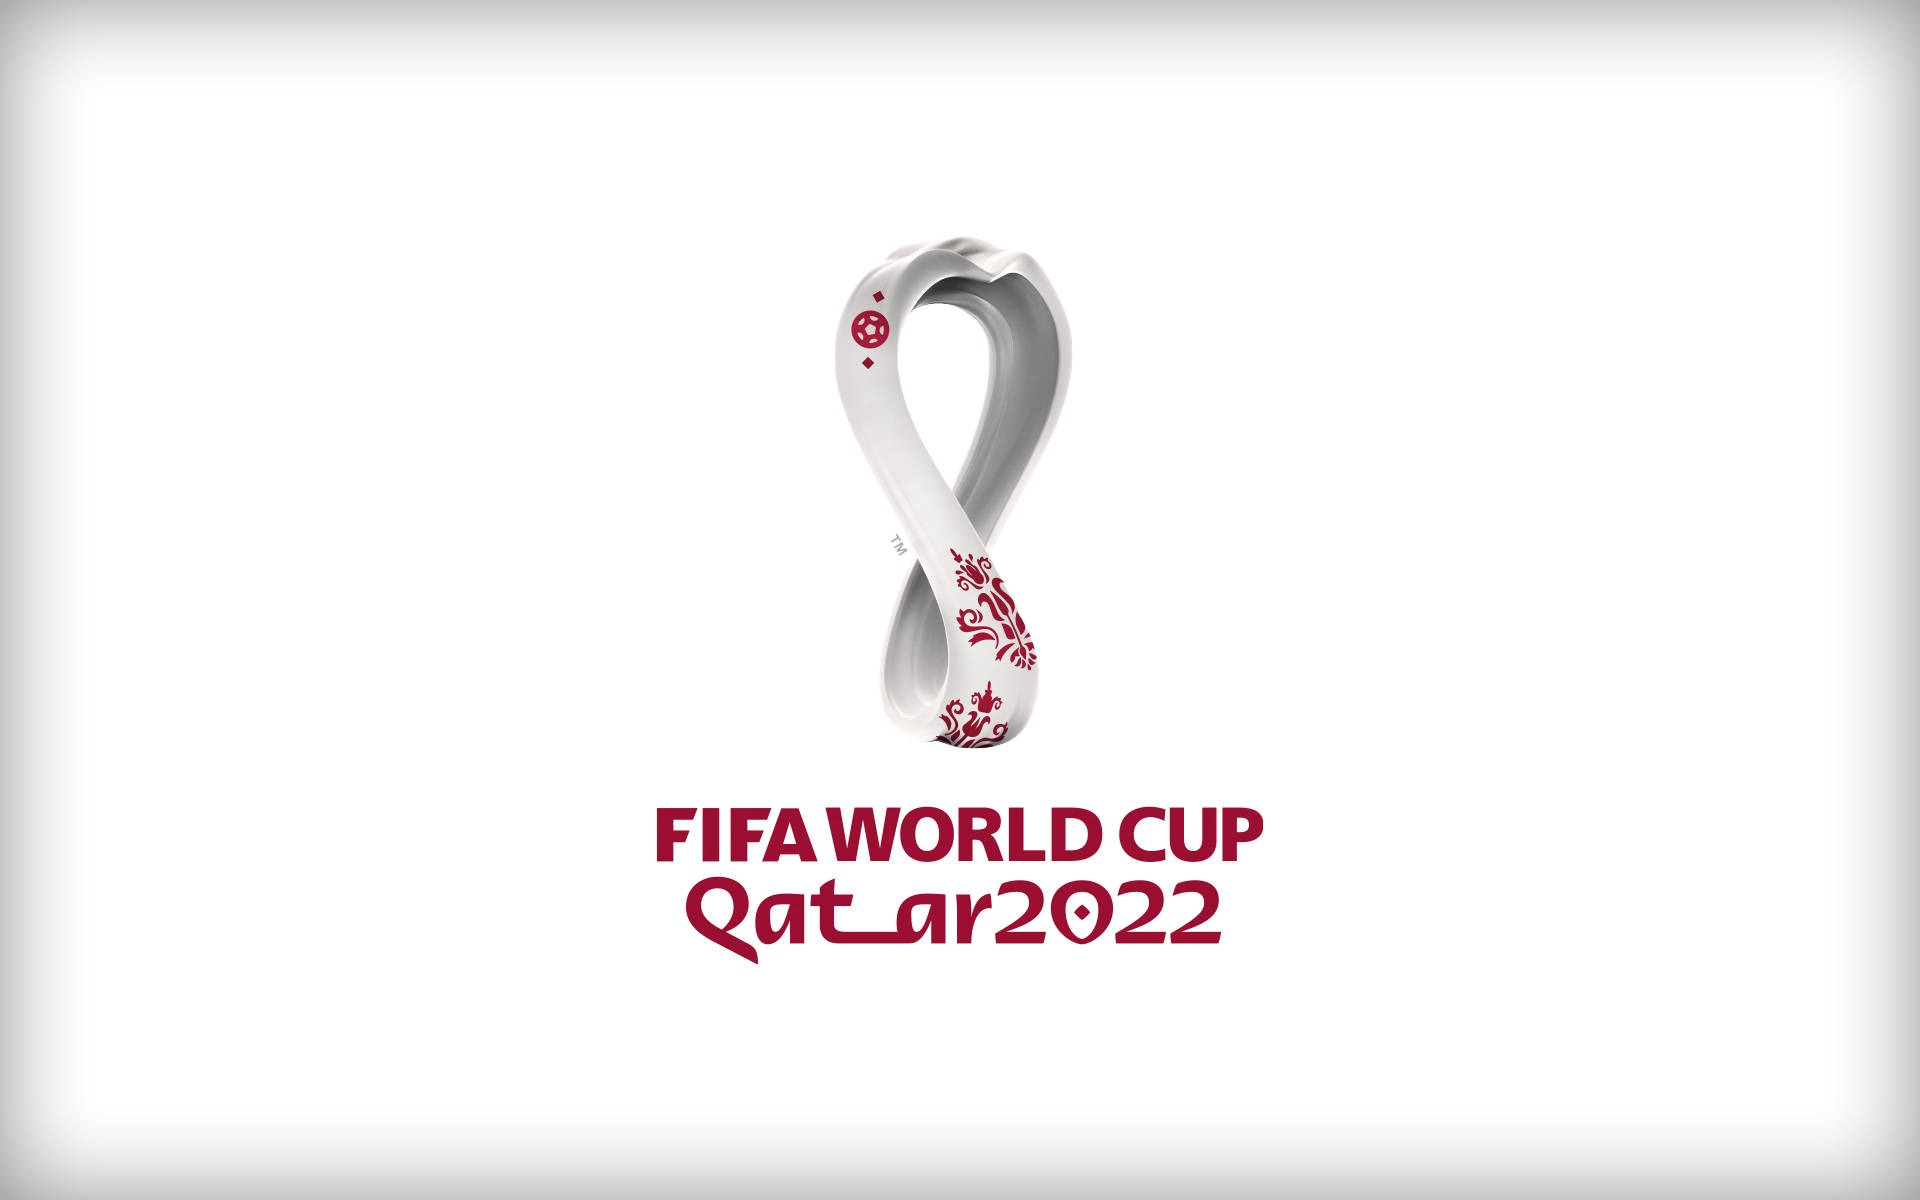 FIFA World Cup Qatar 2022 002 Mistrzostwa Swiata w Pilce Noznej Katar 2022, Logo